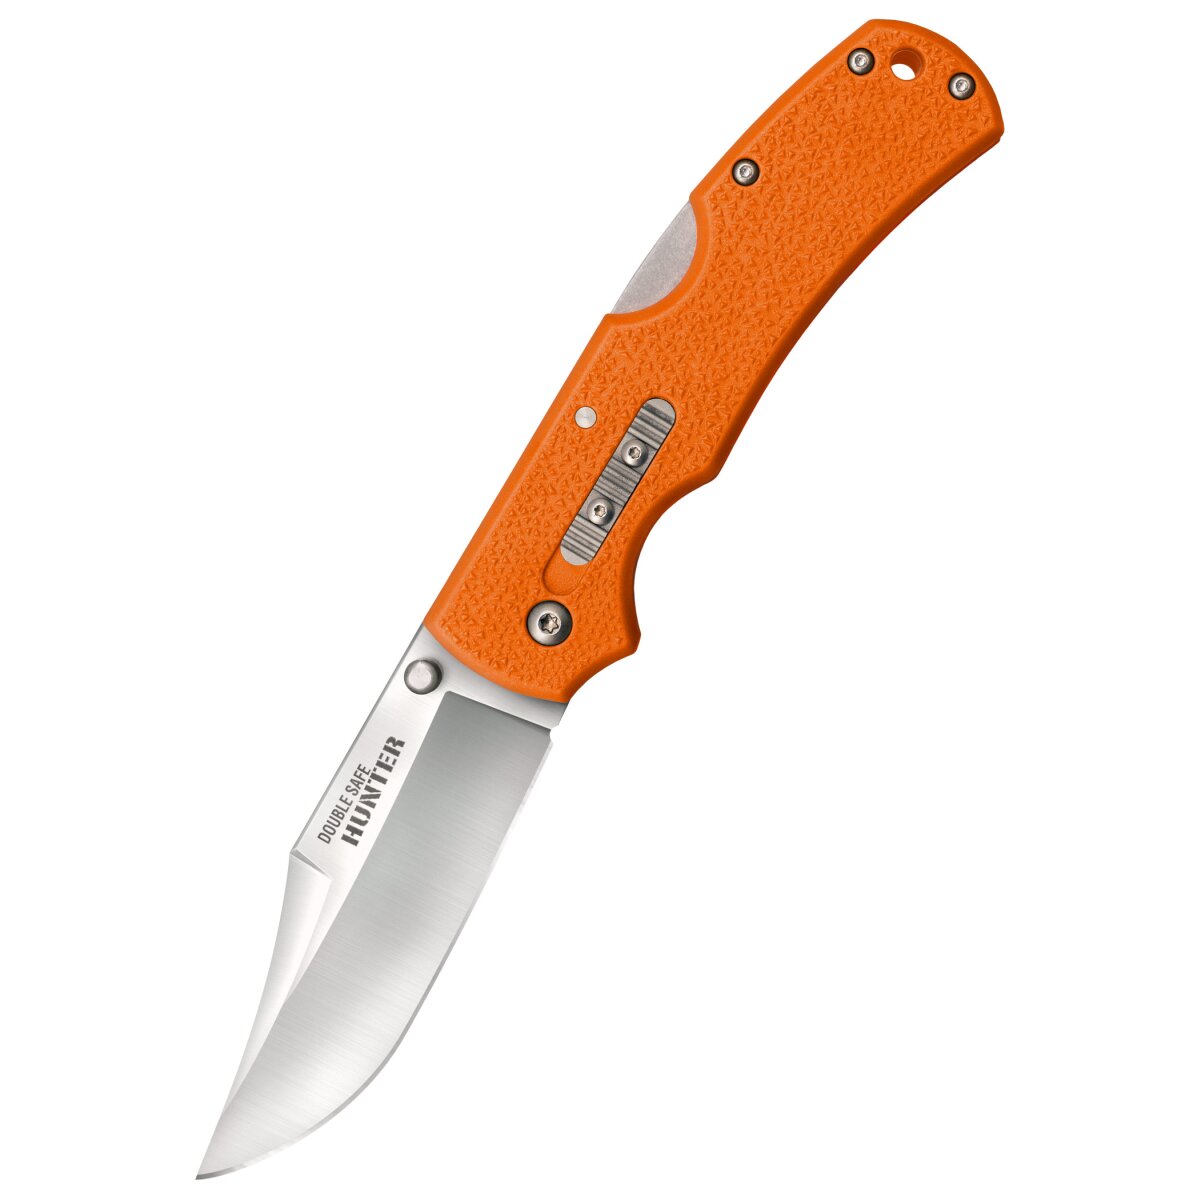 Pocket knife Double Safe Hunter, Orange